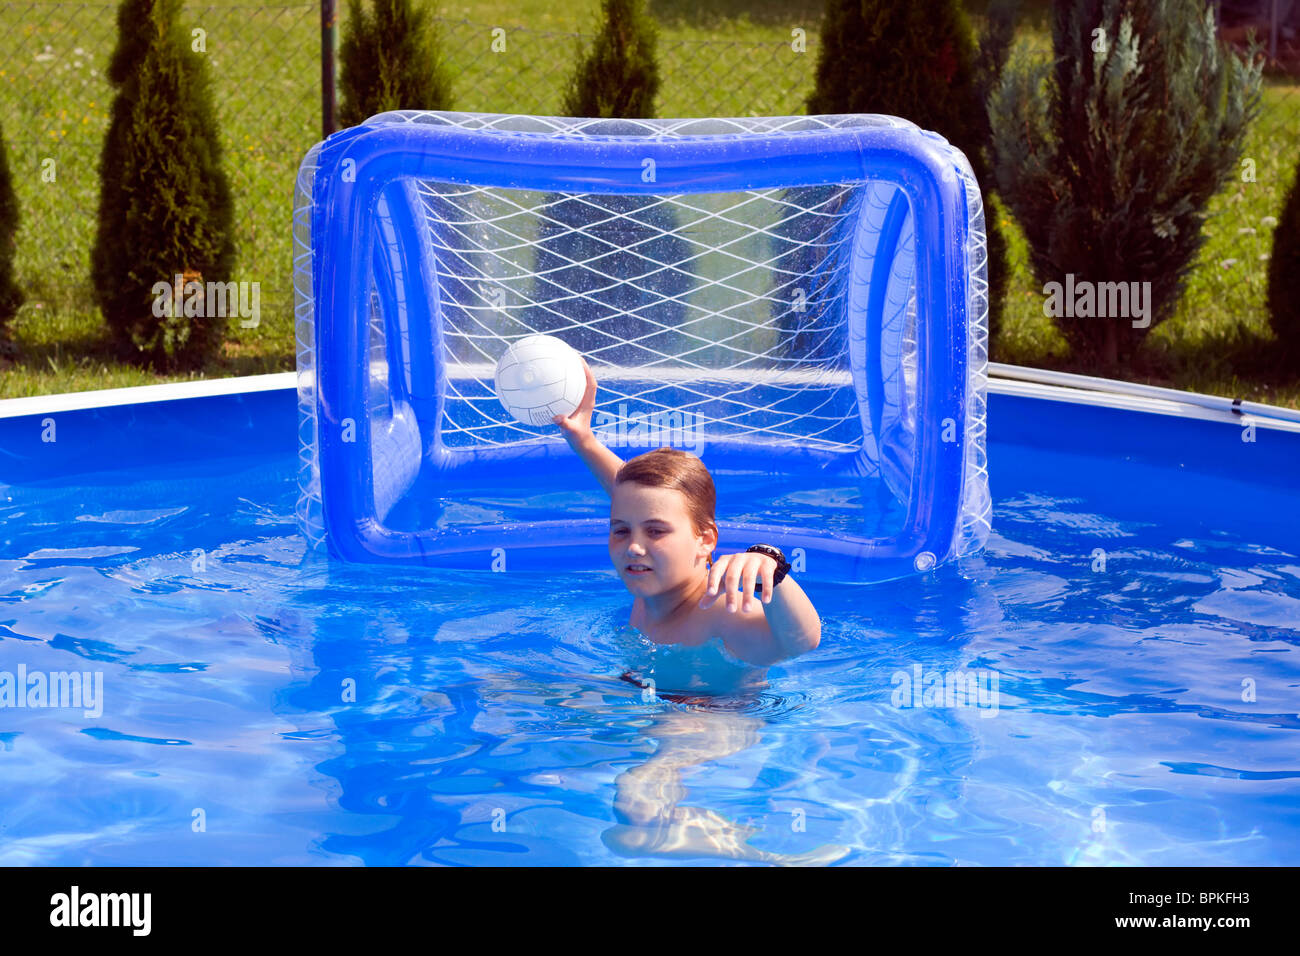 Wasserballspiel Wasserball Olympiade Schwimmen Foto Hintergrund Und Bild  zum kostenlosen Download - Pngtree